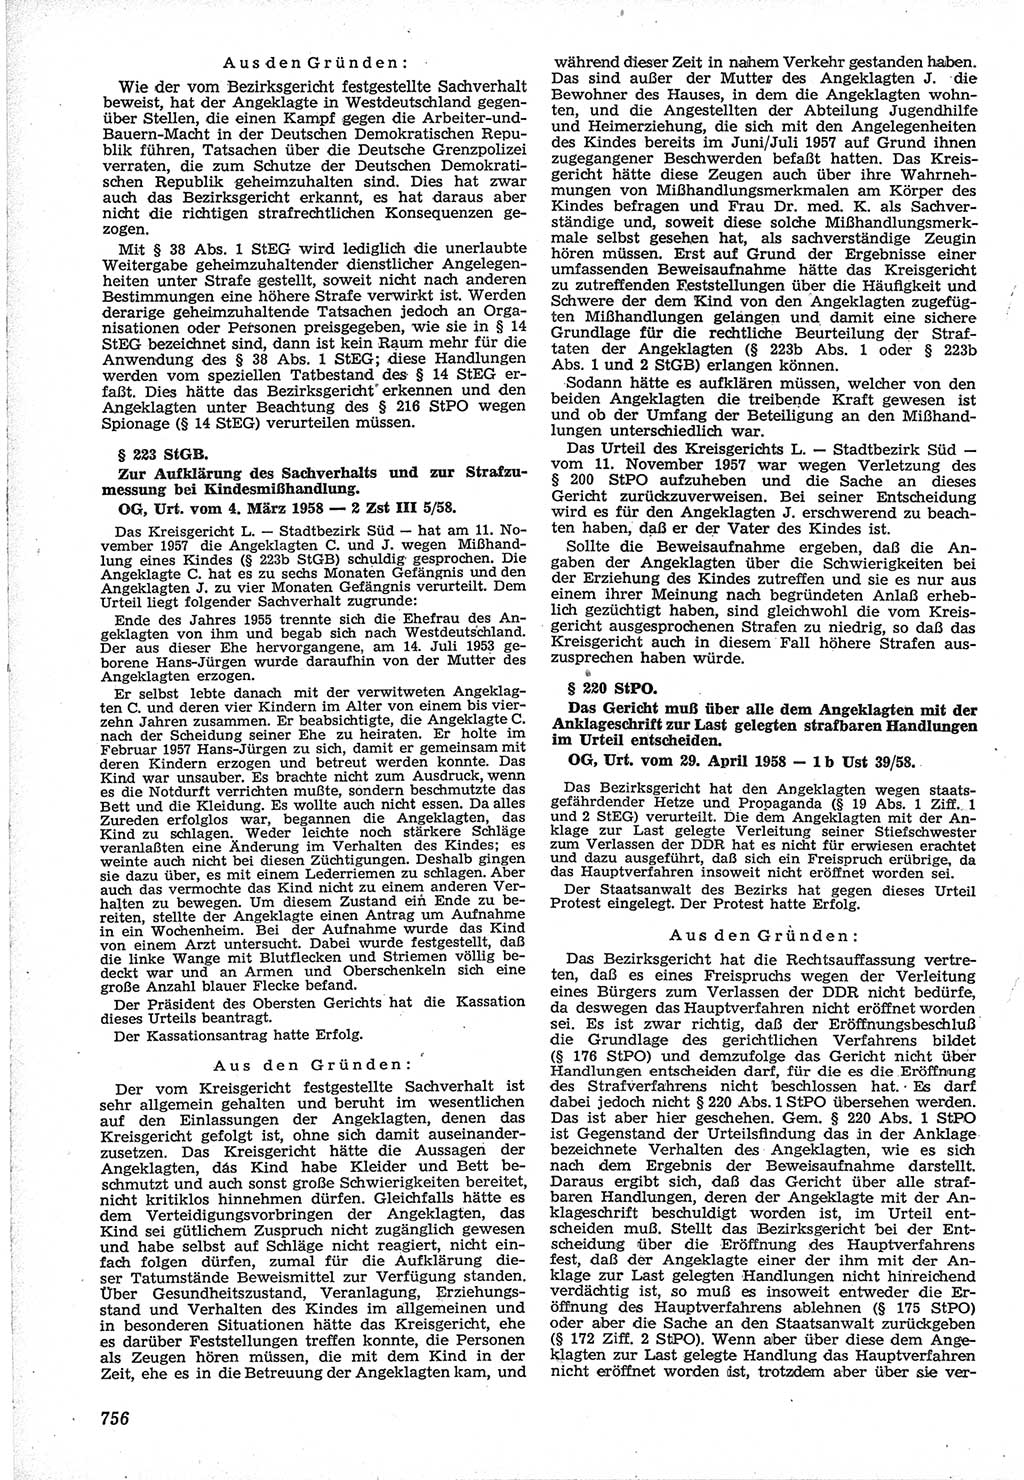 Neue Justiz (NJ), Zeitschrift für Recht und Rechtswissenschaft [Deutsche Demokratische Republik (DDR)], 12. Jahrgang 1958, Seite 756 (NJ DDR 1958, S. 756)